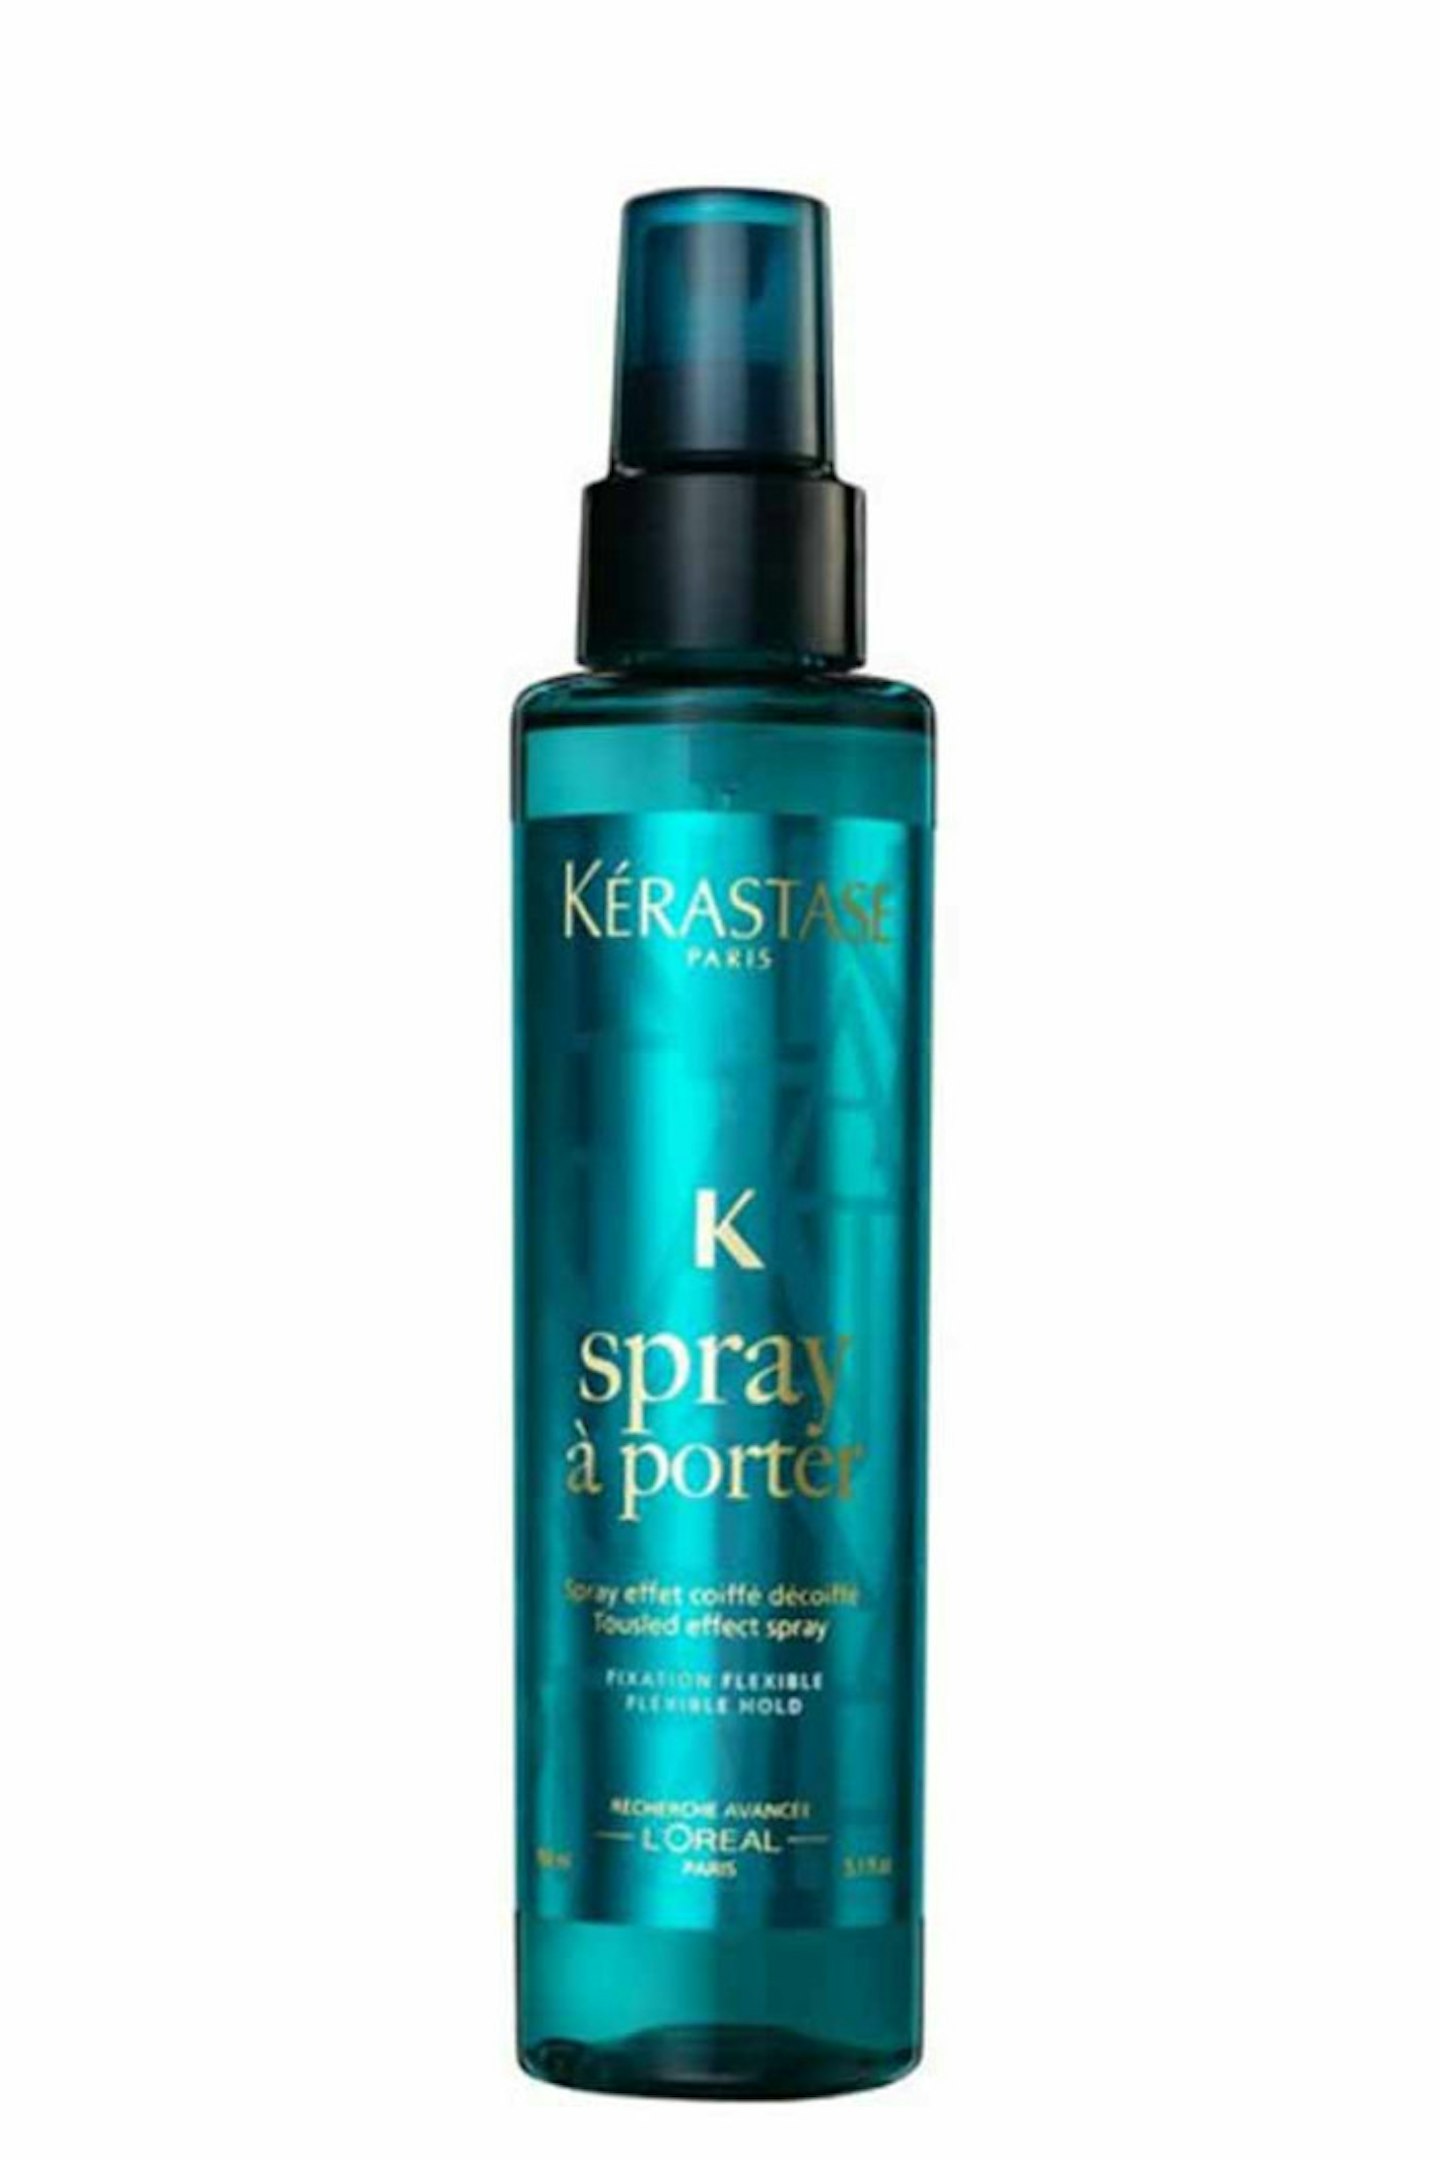 2. Kerastase Spray a Porter, £18.40